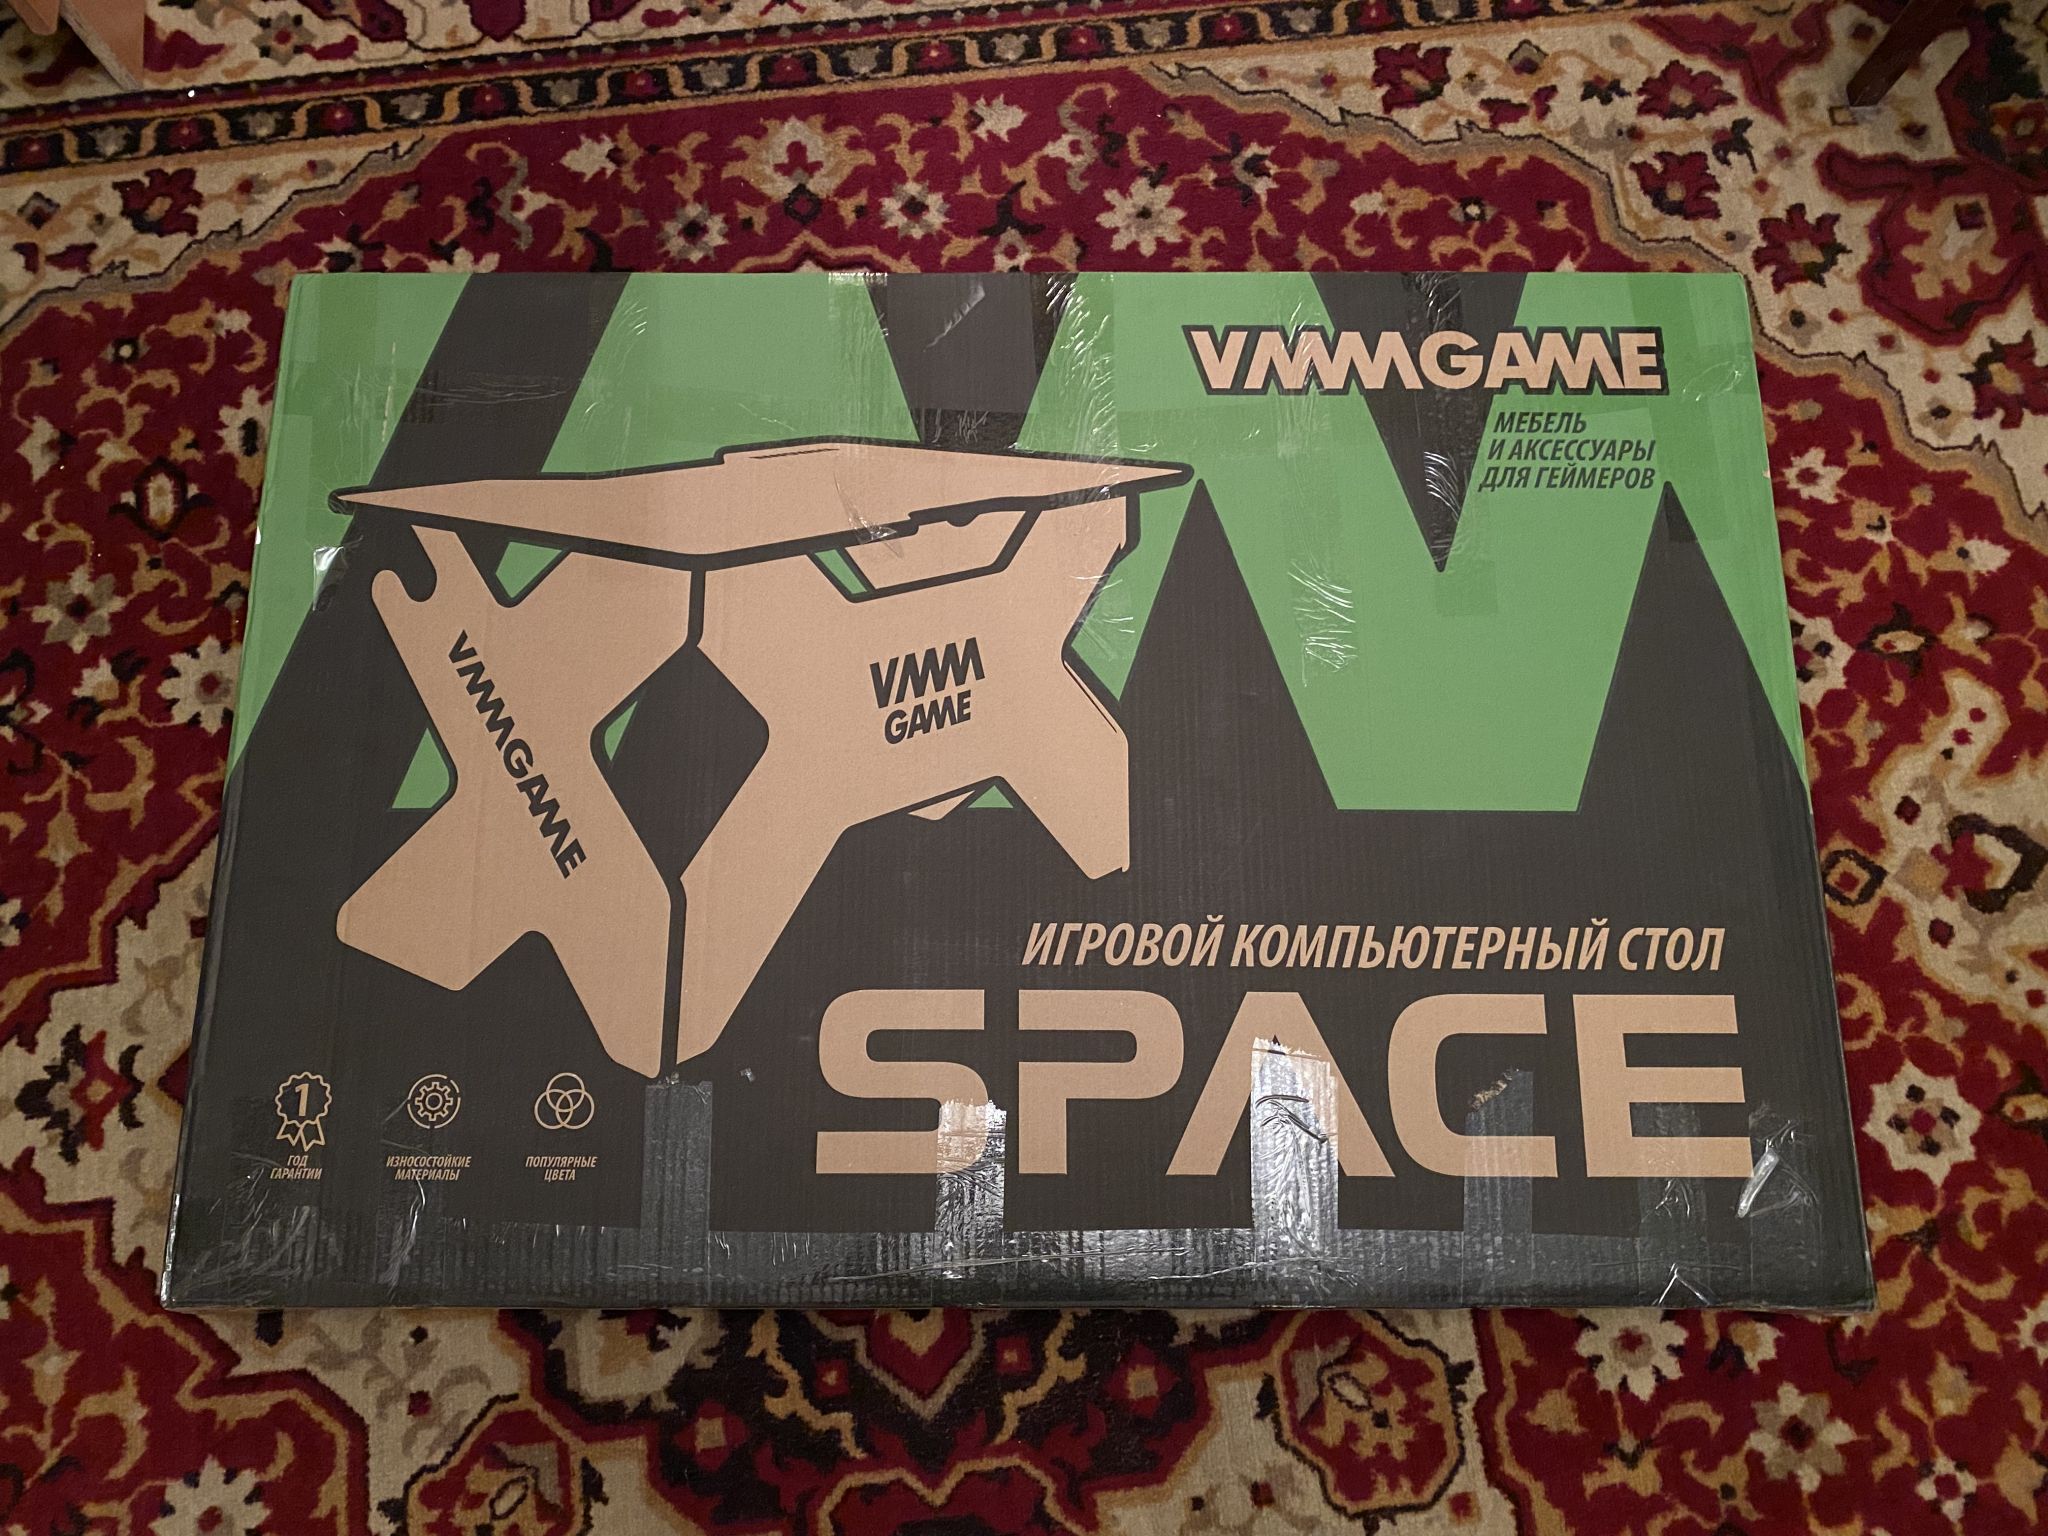 Игровой компьютерный стол vmmgame Space Lunar 140. Стол компьютерный игровой vmmgame Space Lunar (St-2sl). Vmmgame Space Lunar (St-2sl) серебристый. Vmmgame one Lunar. Vmmgame space